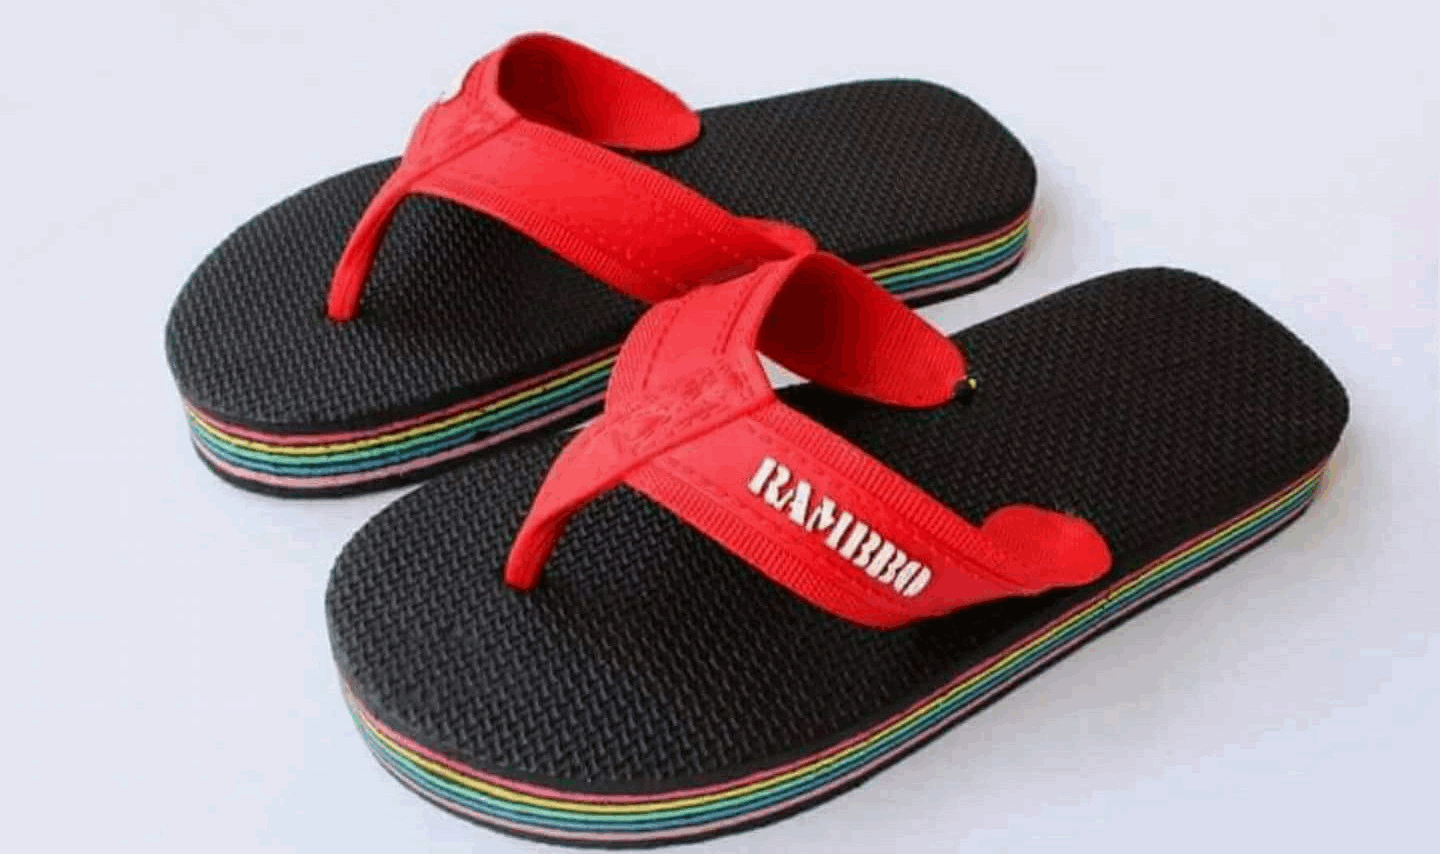 Filipino childhood things - Rambbo slippers